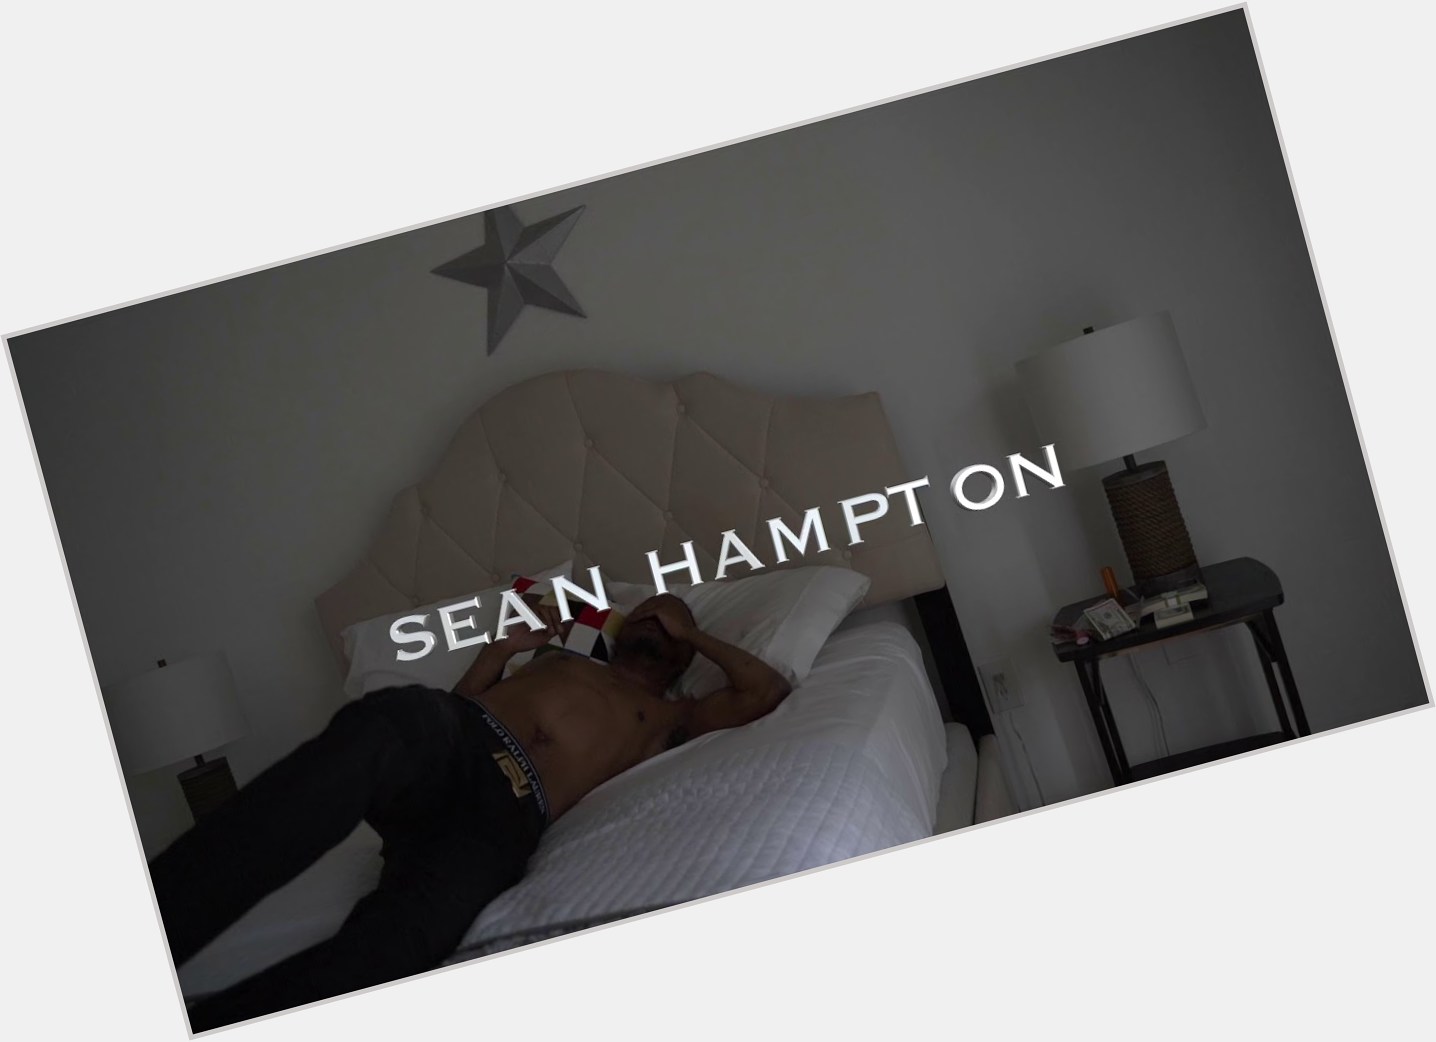 Sean Hampton dating 9.jpg